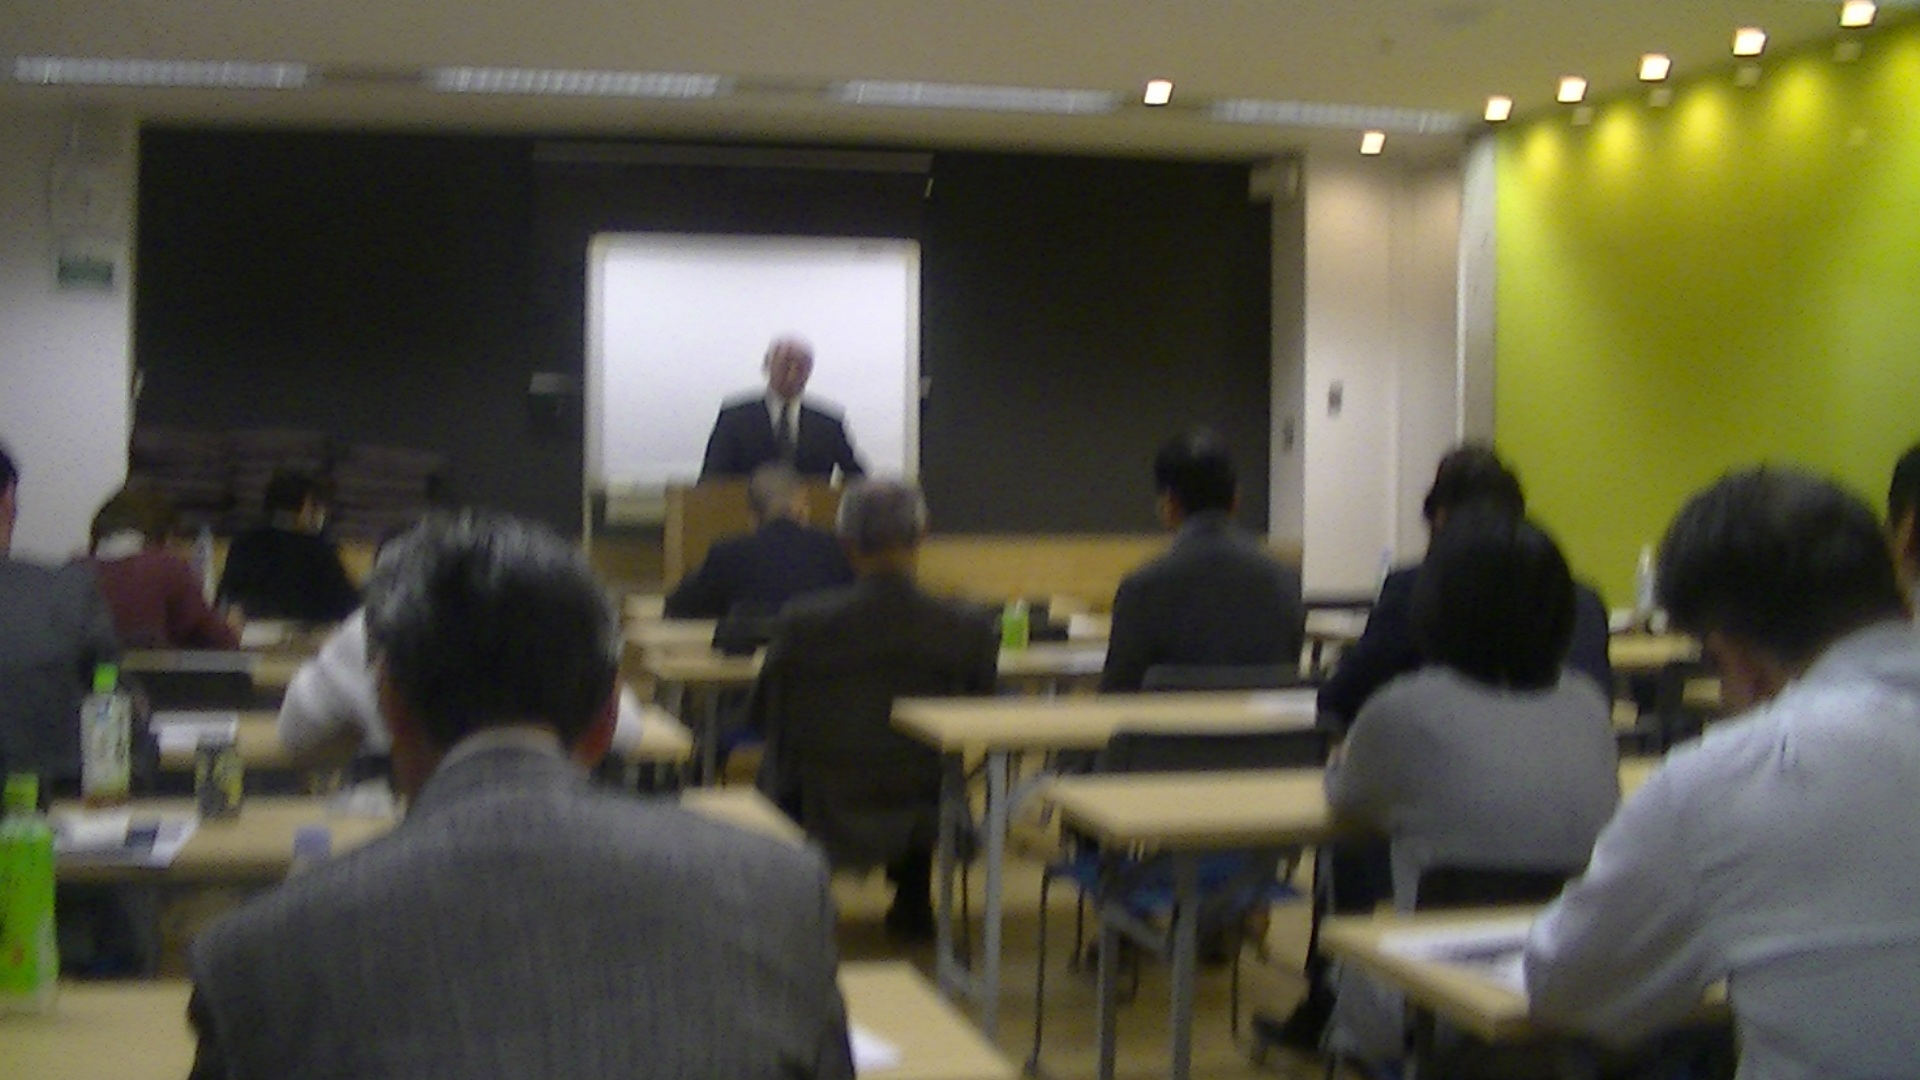 PIC 0093 - 平成30年度 東京思風塾2月3日開催しました。